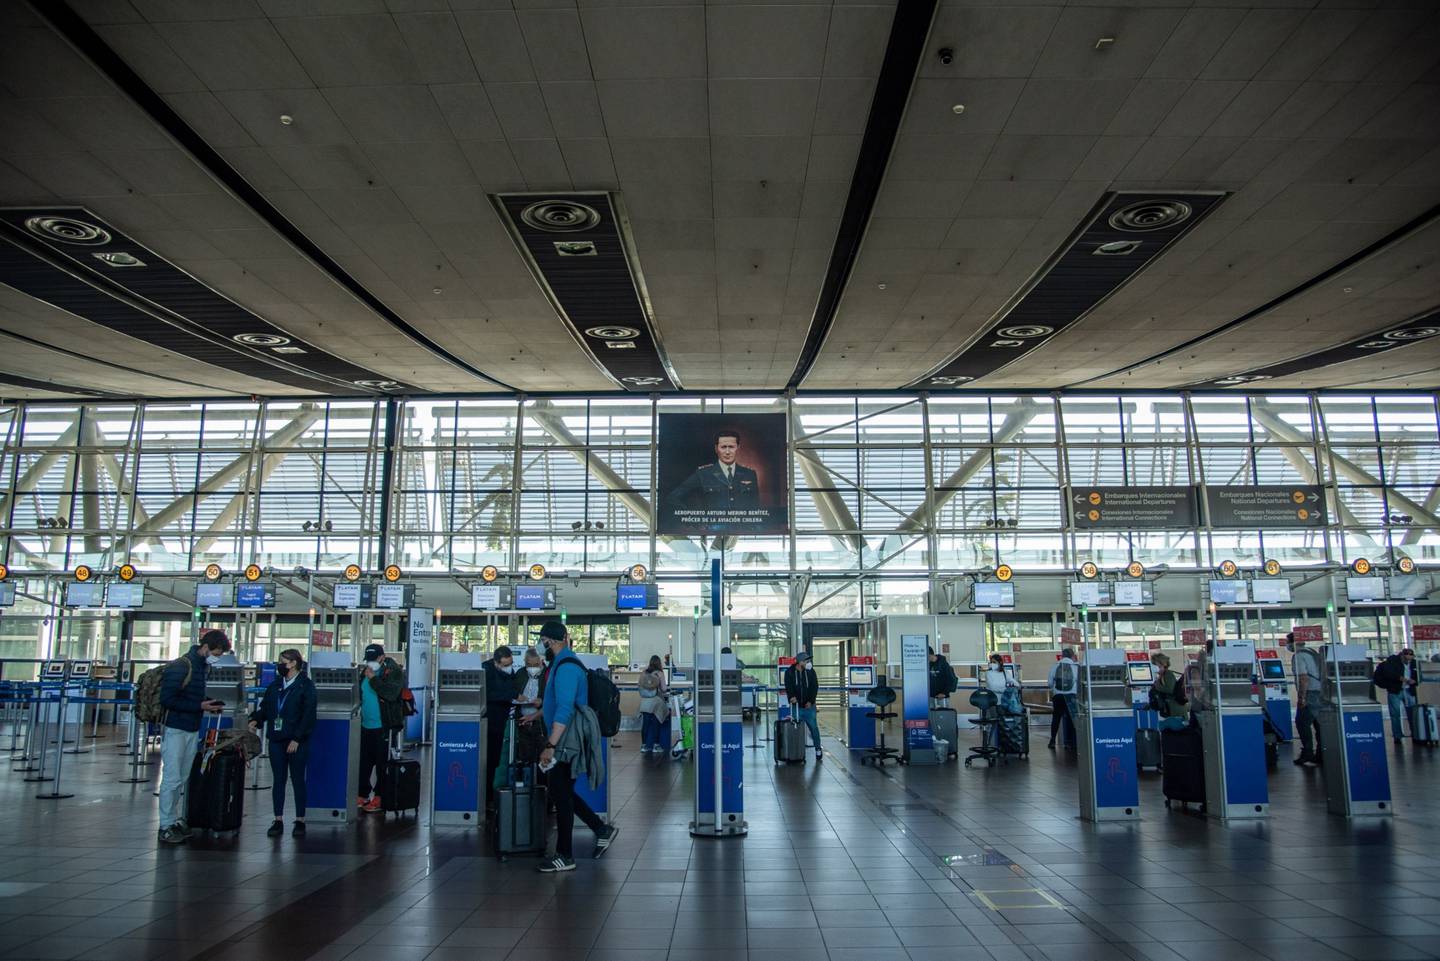 VINCI administra 53 aeropuertos alrededor del mundo, como el aeropuerto de Santiago en Chile